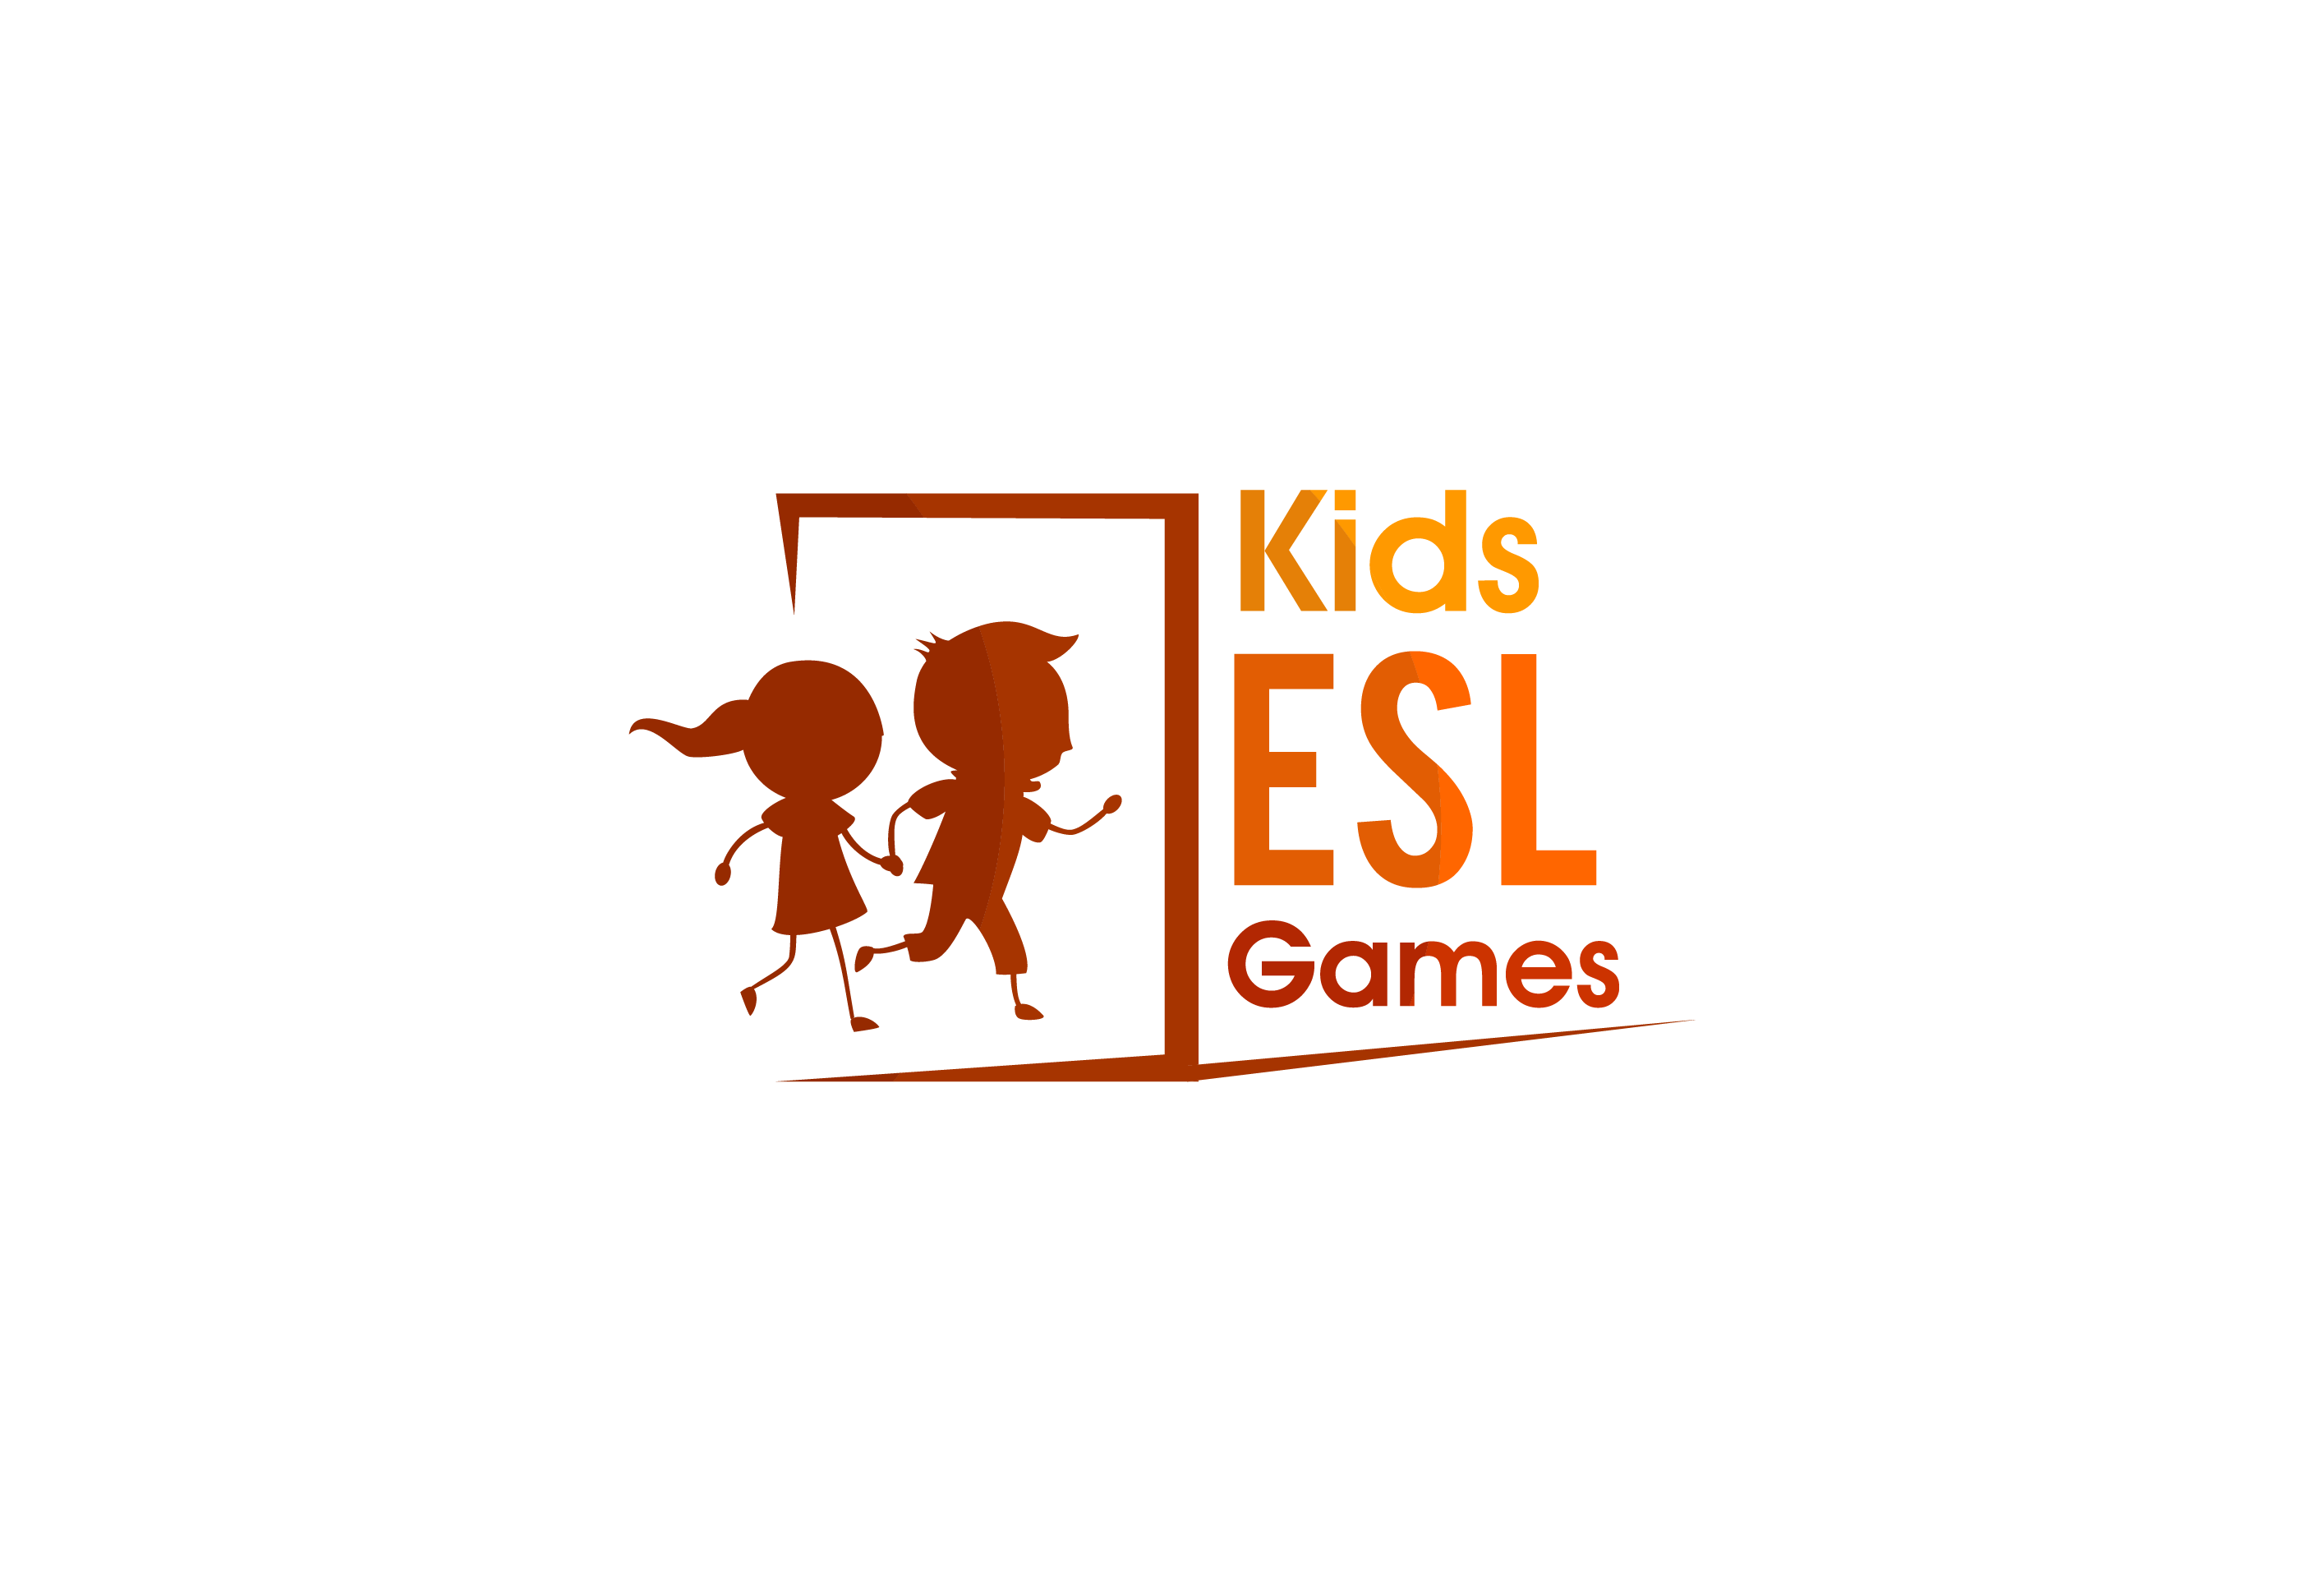 ESL Kids Games